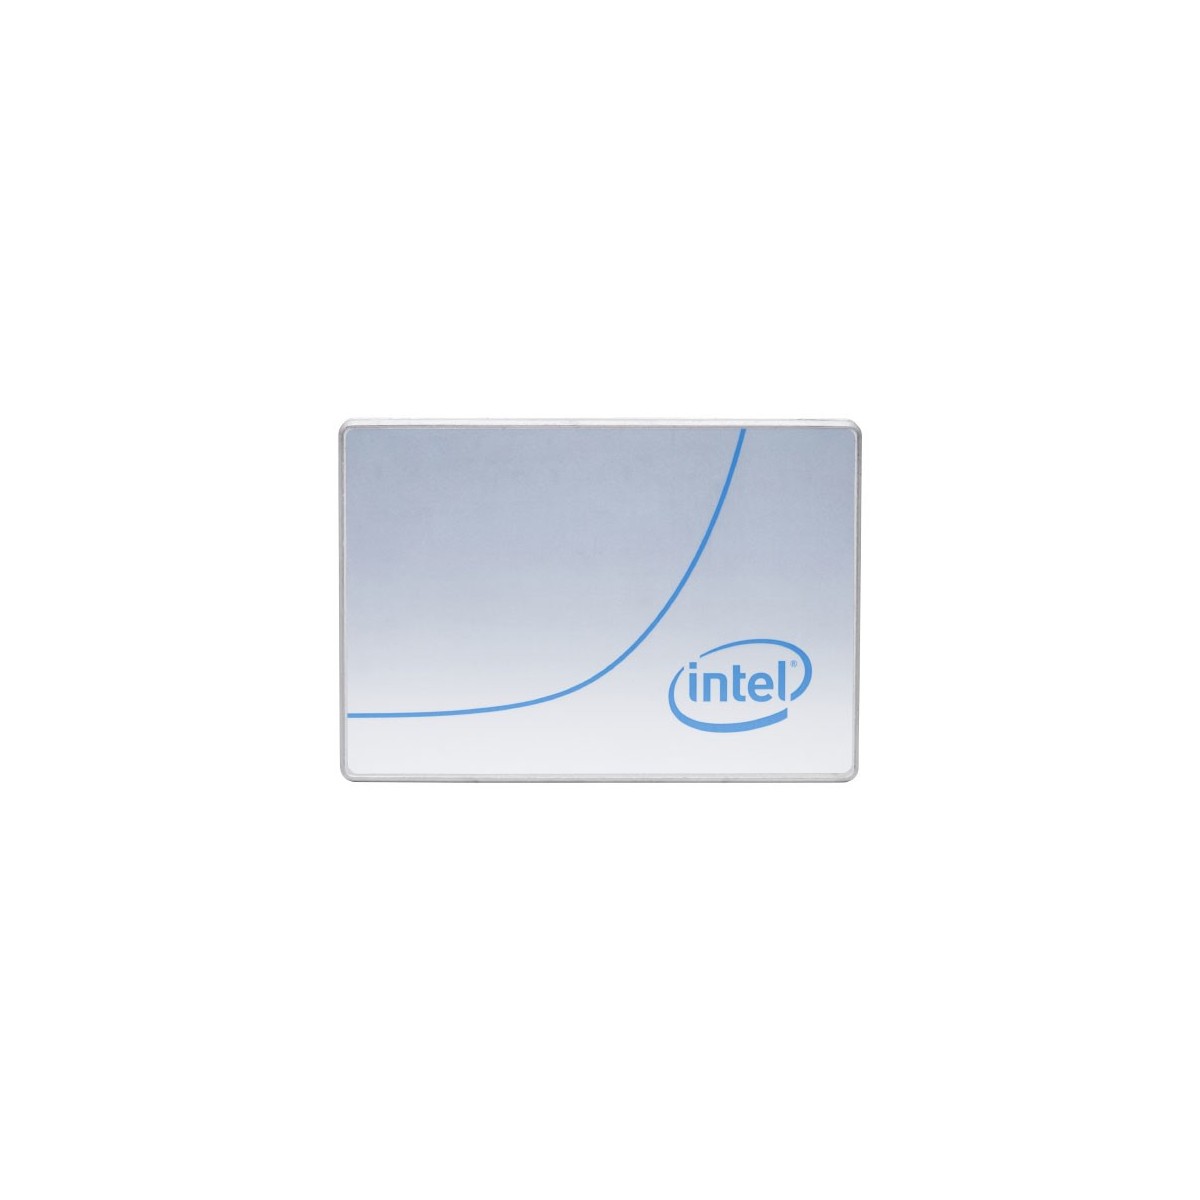 Intel SSD-P5620 1.6TB U.2 15mm PCIe SglPk - Solid State Disk - 1,600 GB